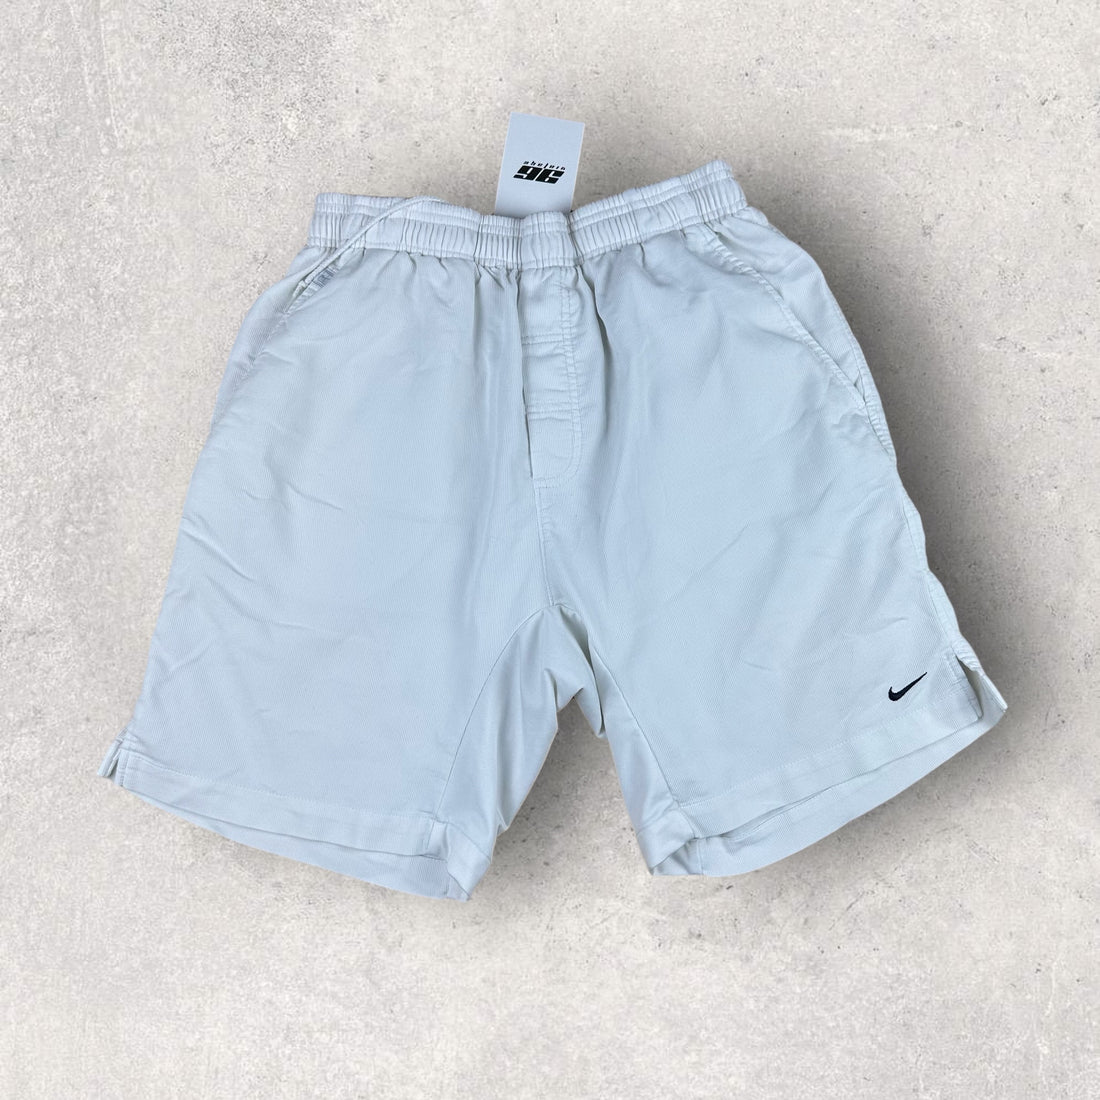 Vintage Nike Shorts (S)